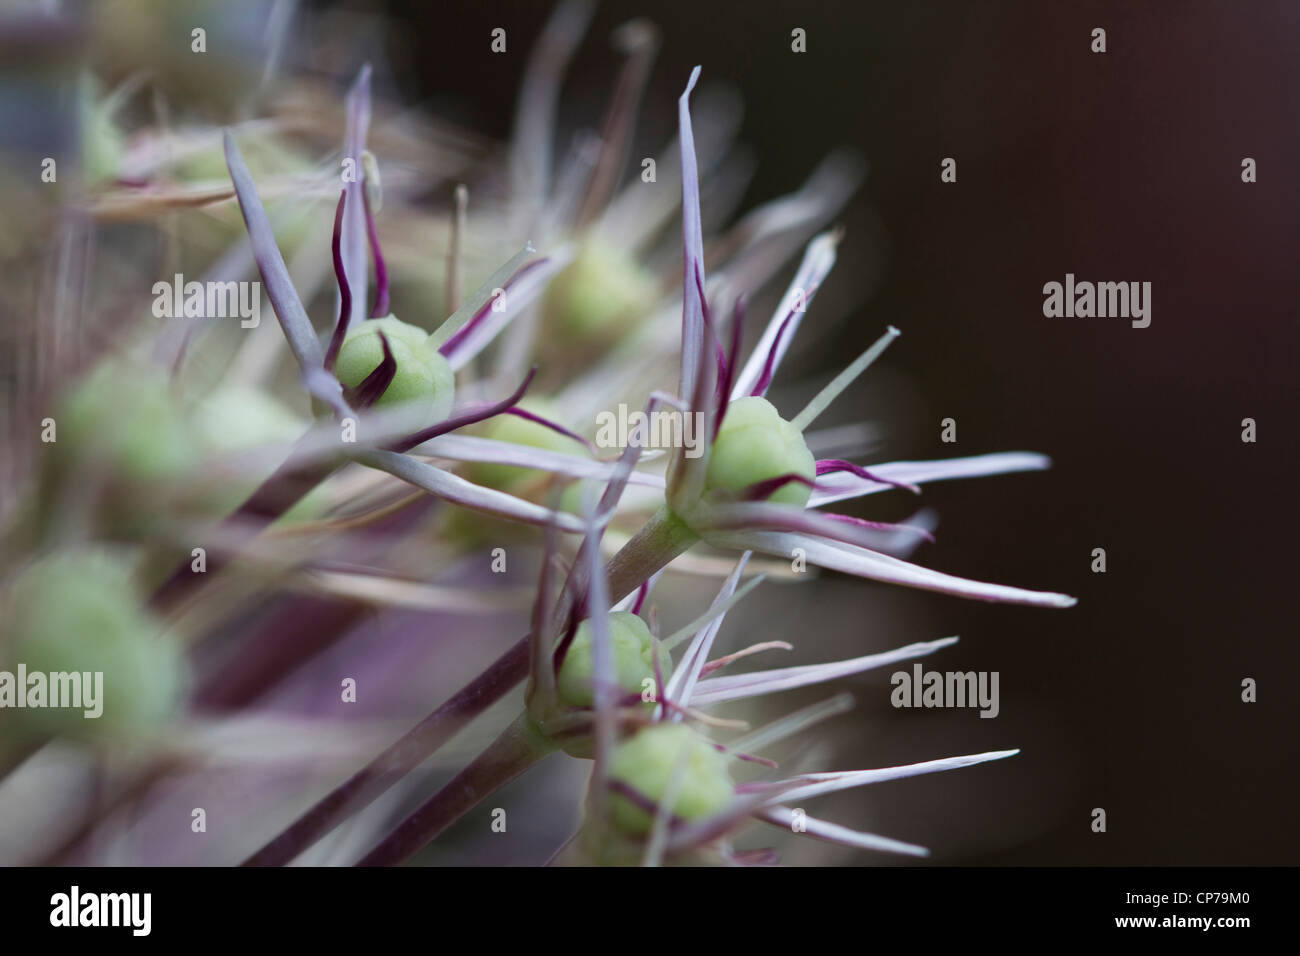 Allium christophii, Allium, Purple, Black. Stock Photo